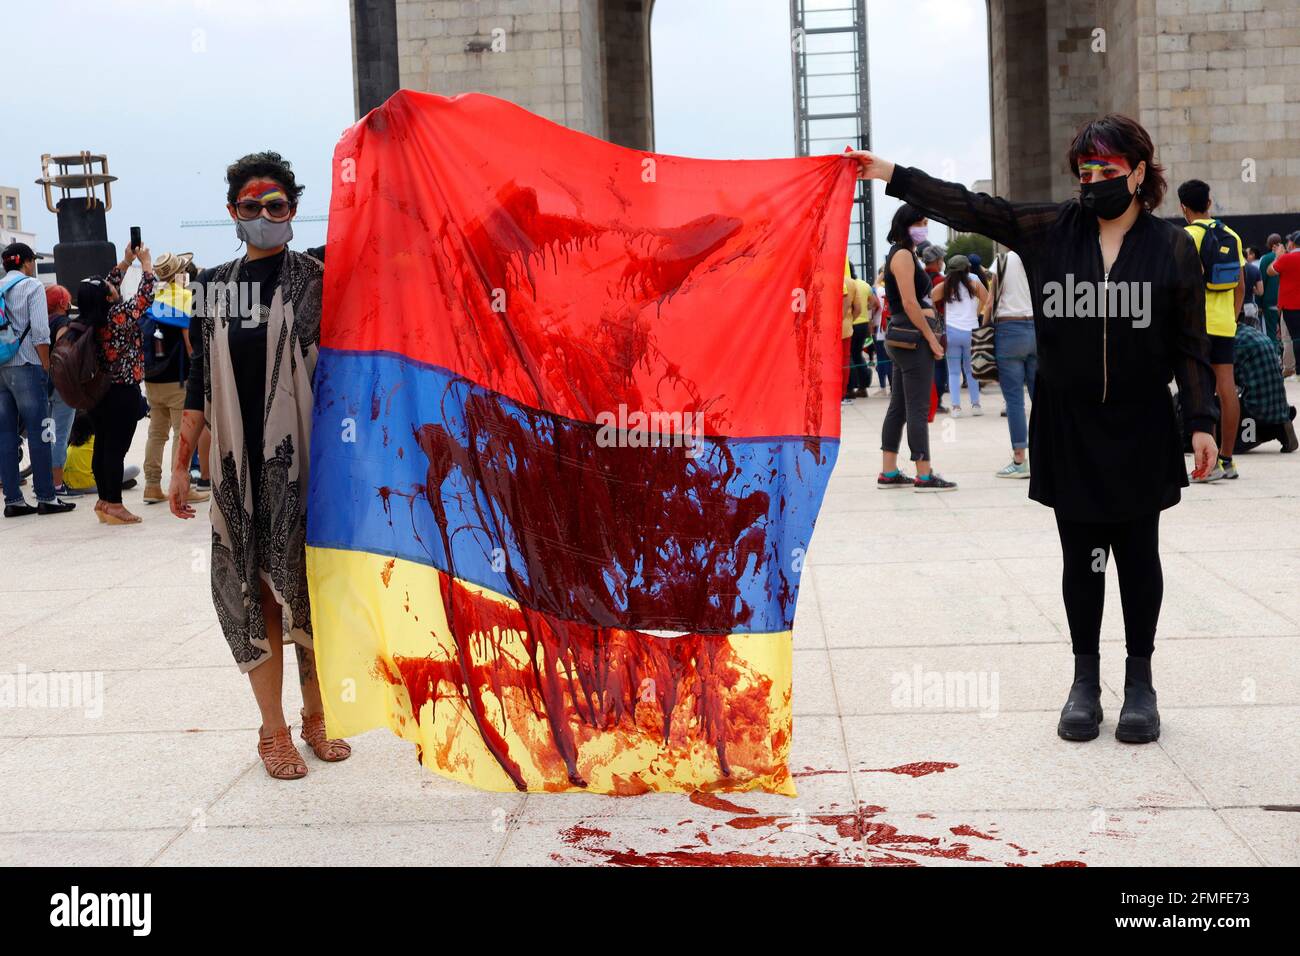 Nicht exklusiv: MEXIKO-STADT, MEXIKO - 8. MAI: Kolumbianische Frauen halten eine kolumbianische Flagge, während sie sich einer Demonstration am Monument of Revolution anschließt, um gegen die protestgesellschaft zu protestieren Stockfoto